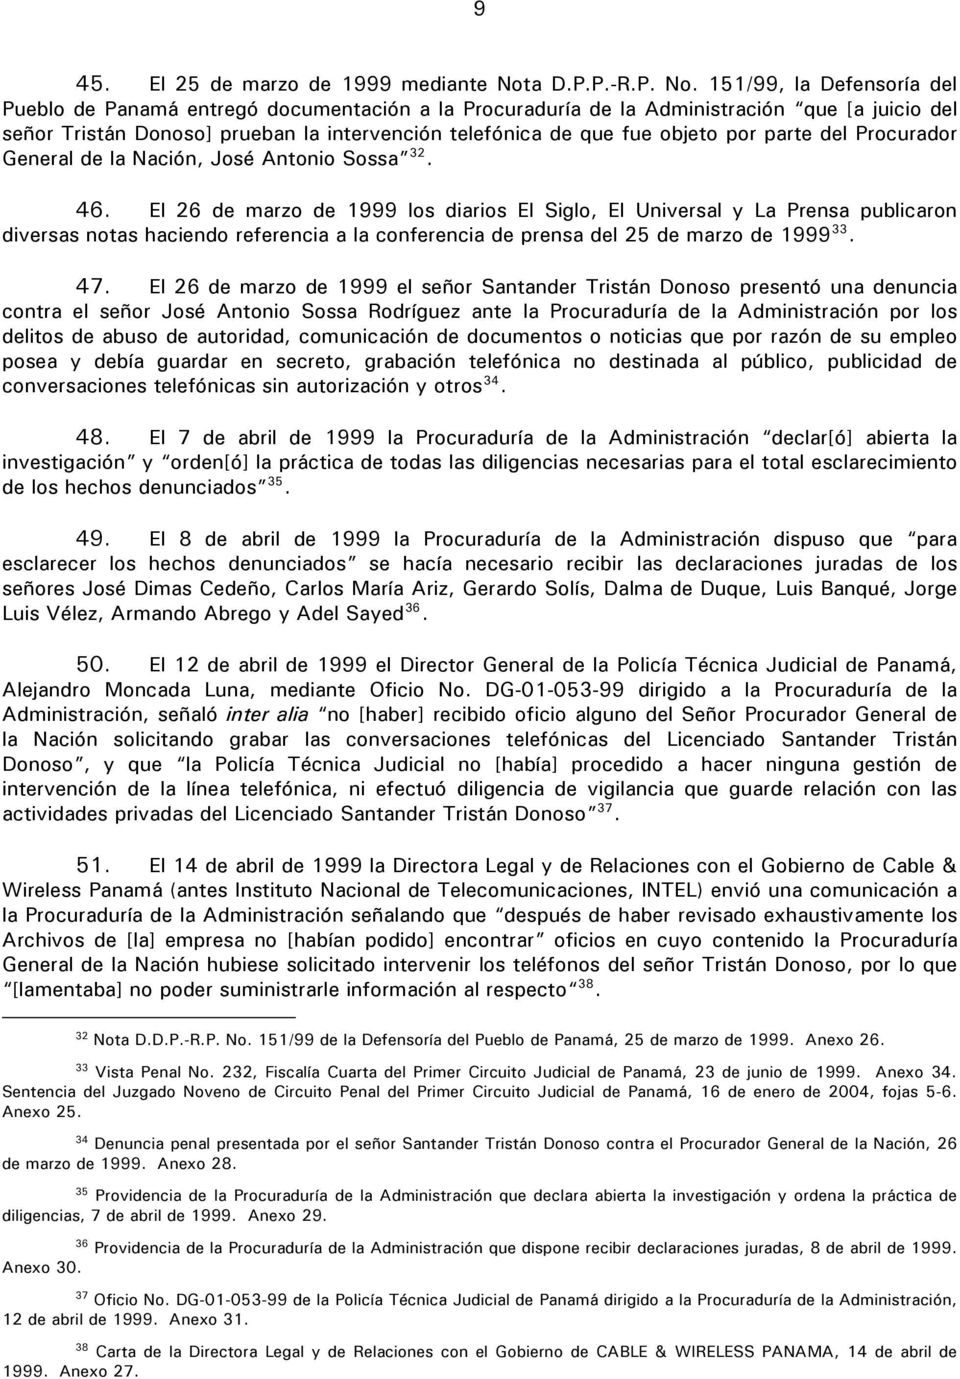 151/99, la Defensoría del Pueblo de Panamá entregó documentación a la Procuraduría de la Administración que [a juicio del señor Tristán Donoso] prueban la intervención telefónica de que fue objeto